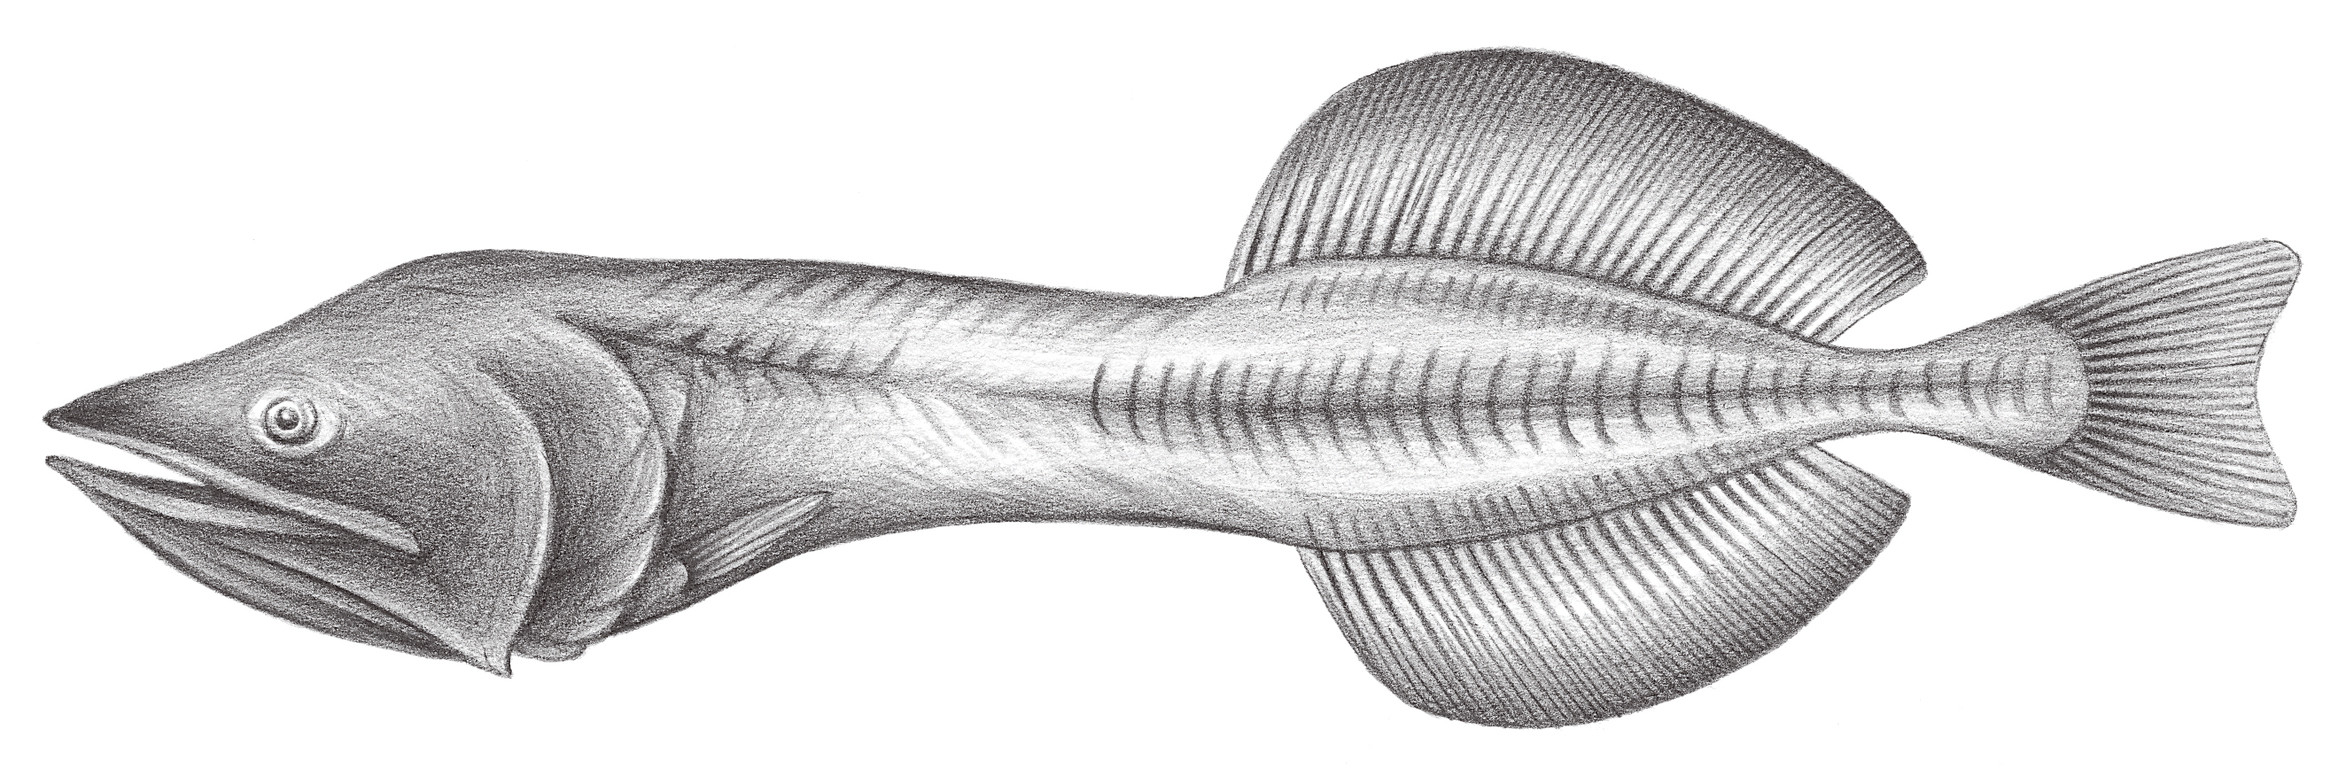 758.	擬鯨口魚 Cetostoma regani Zugmayer, 1914